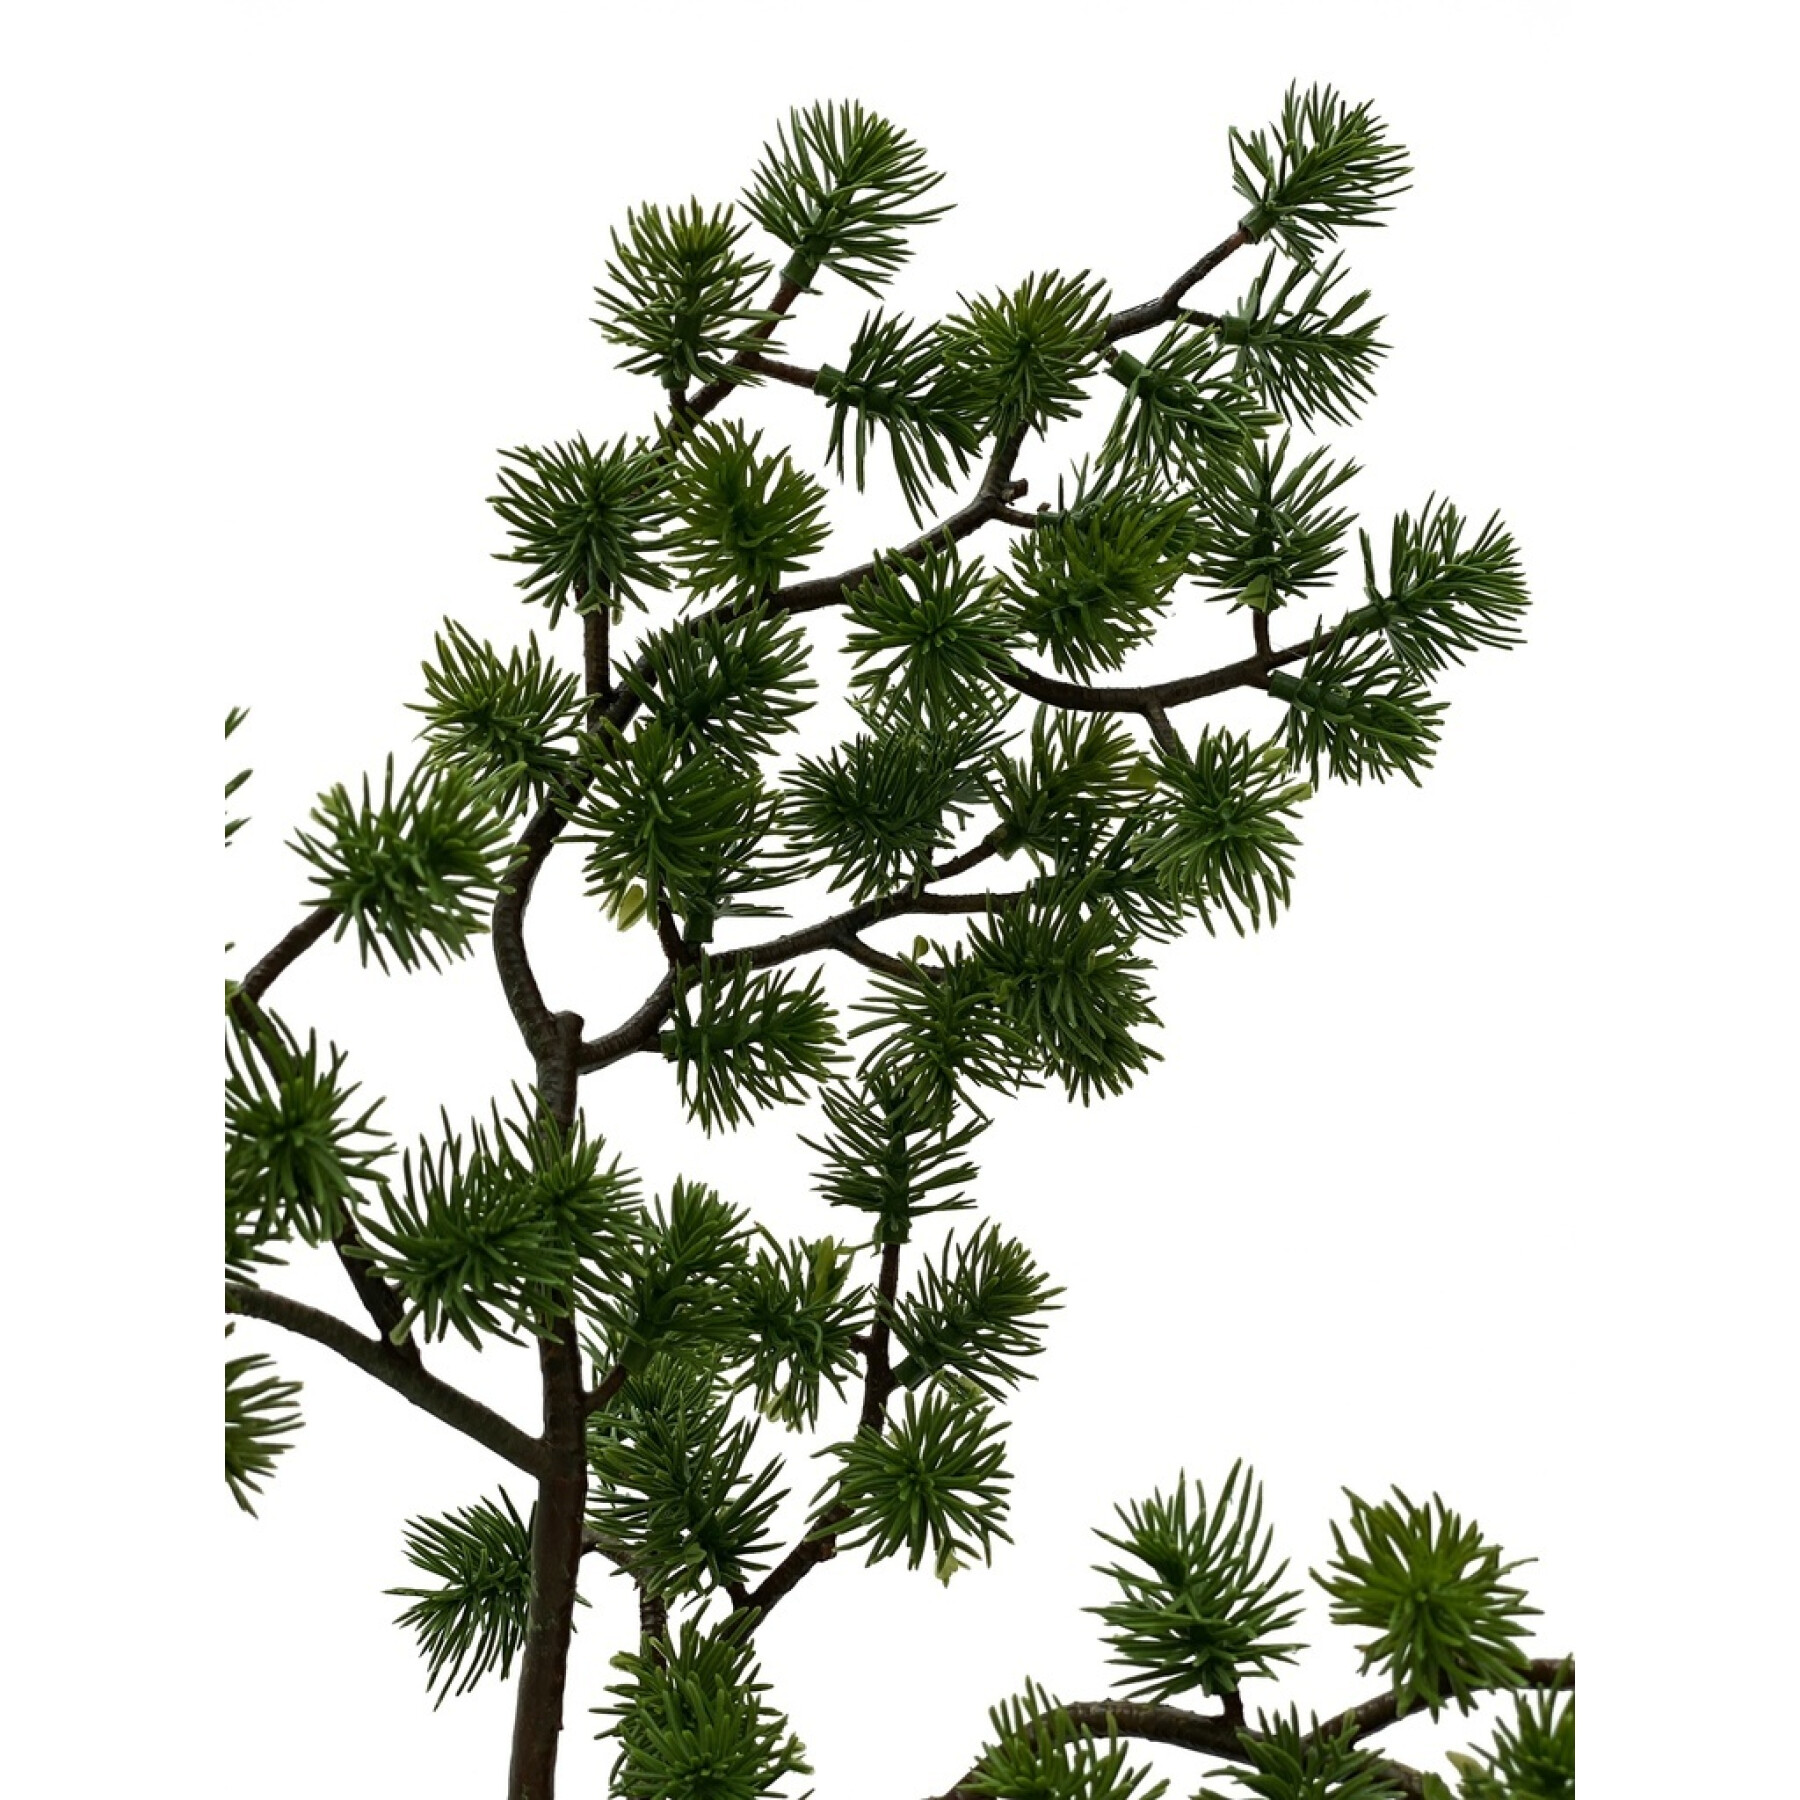 Branche de pin artificielle Opjet 81 cm